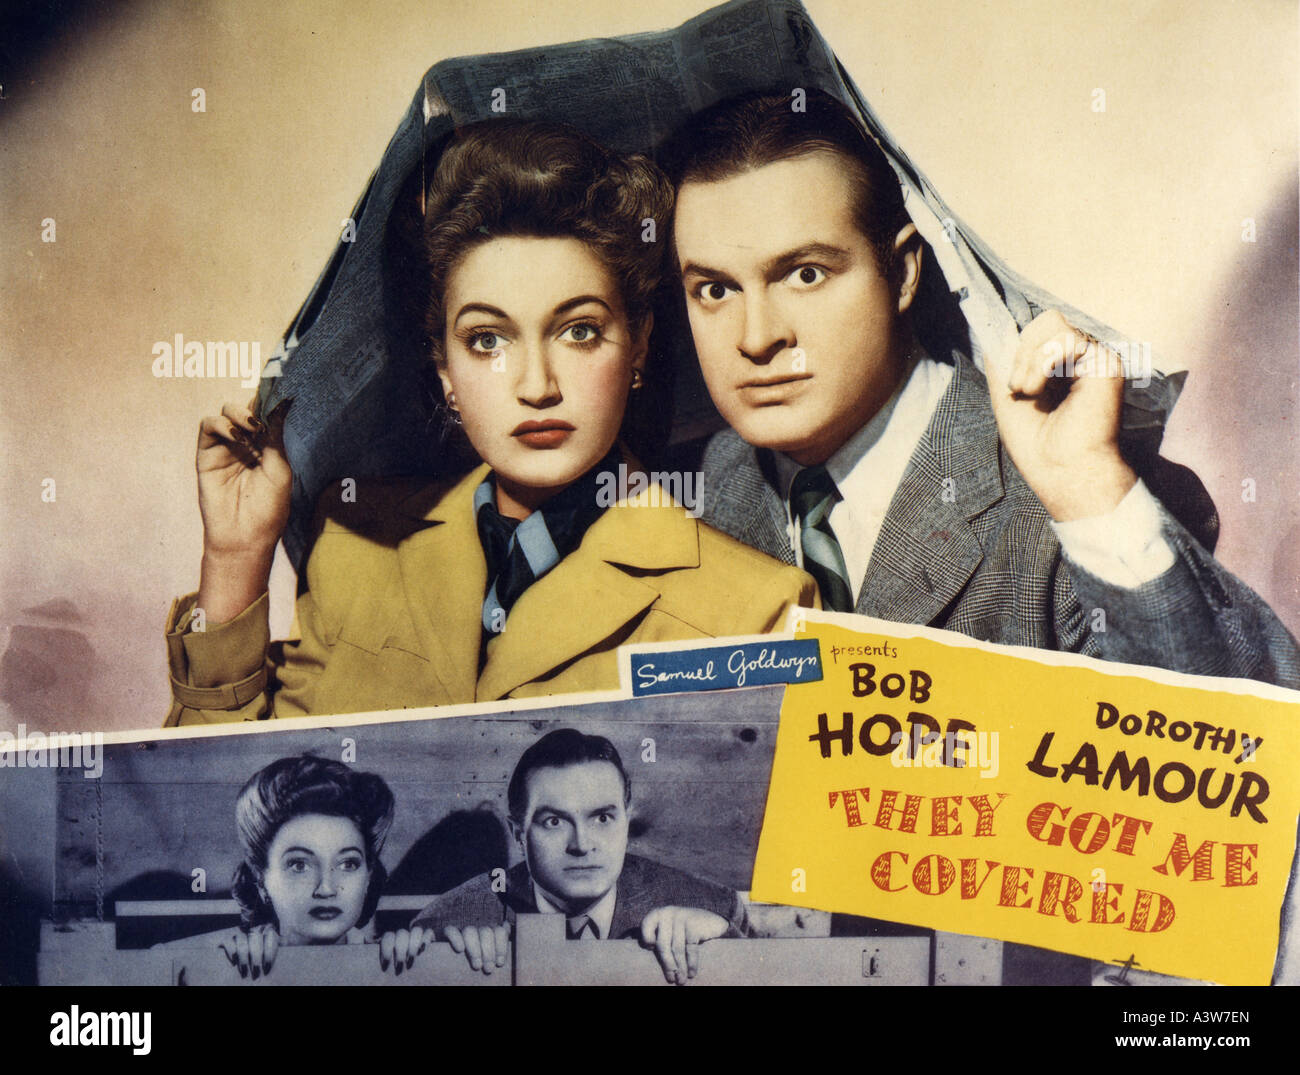 ME consiguieron la tarjeta del vestíbulo cubierto para 1943 Samuel Goldwyn film con Dorothy Tonos lamour y Bob Hope Foto de stock